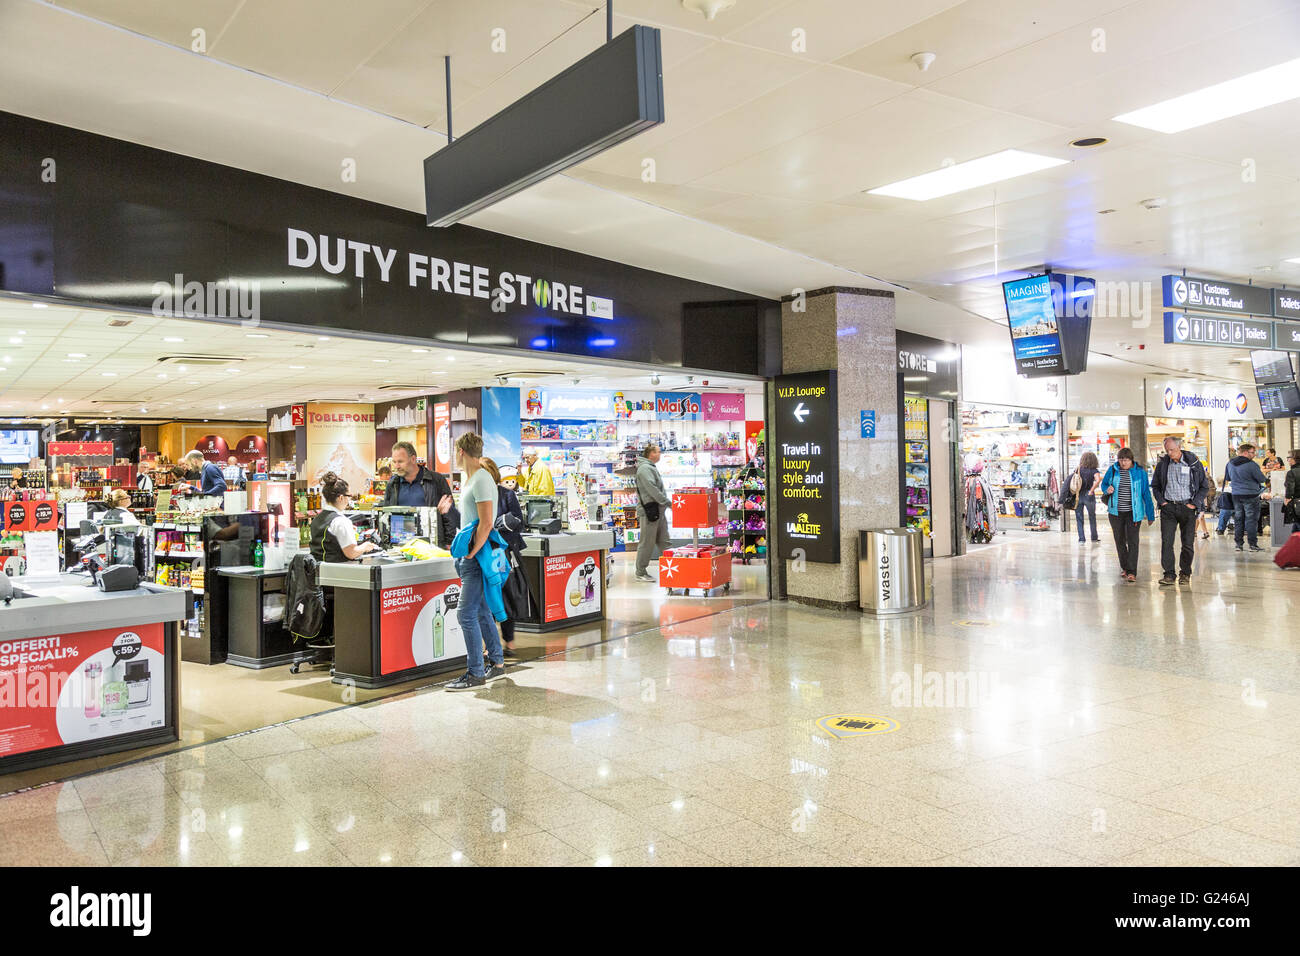 Duty free store in aeroporto concourse, Malta Foto Stock